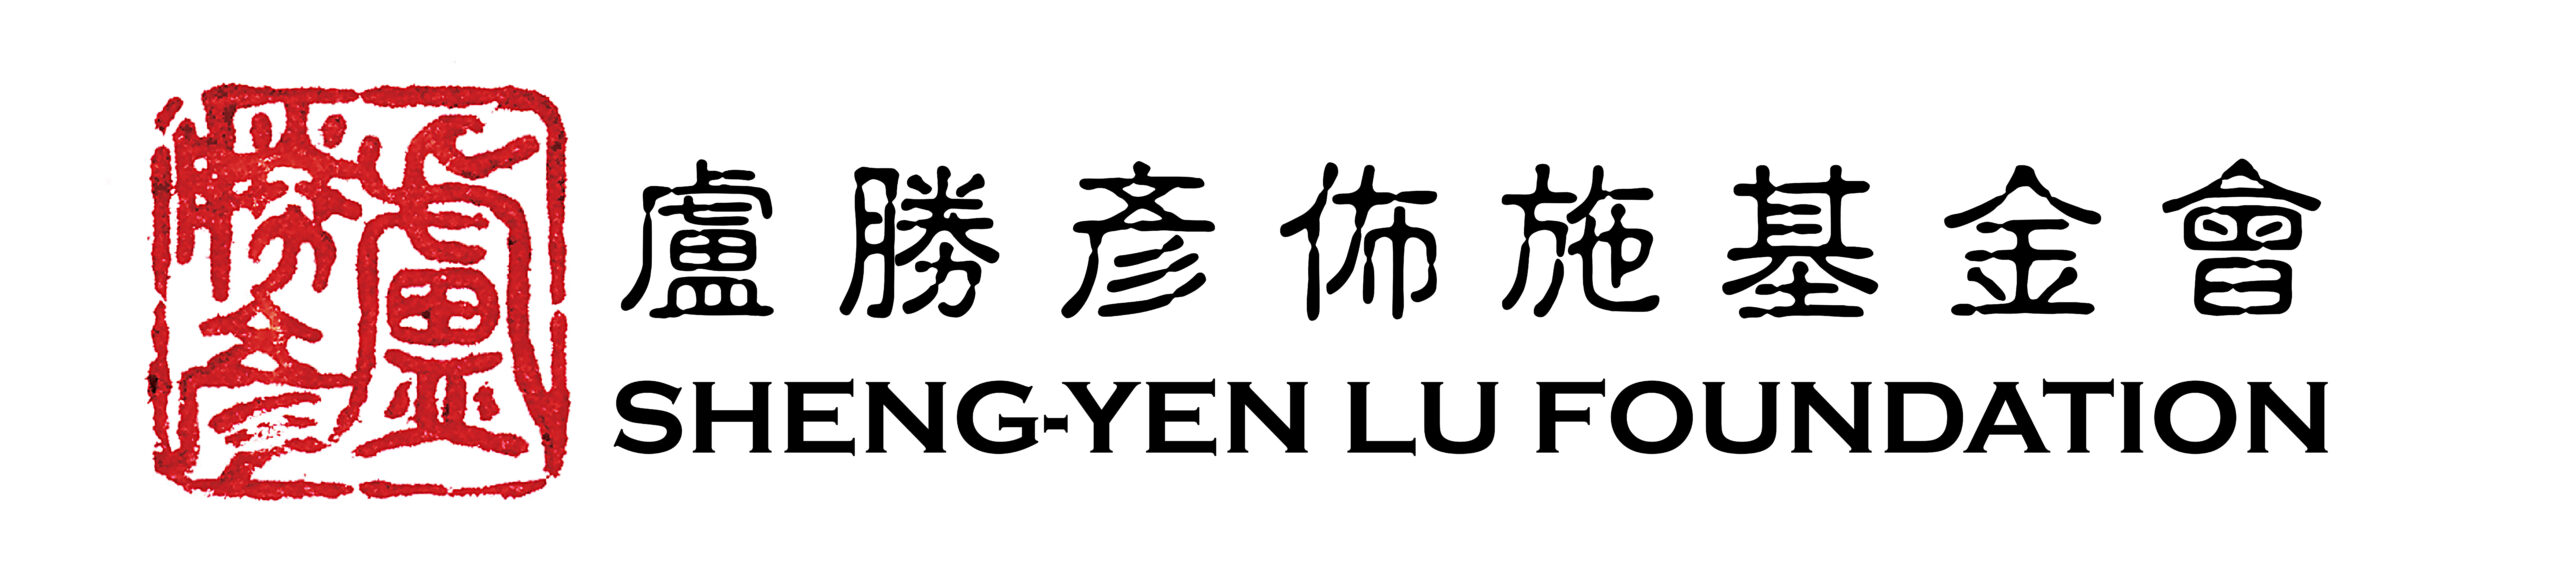 Sheng-Yen Lu Foundation